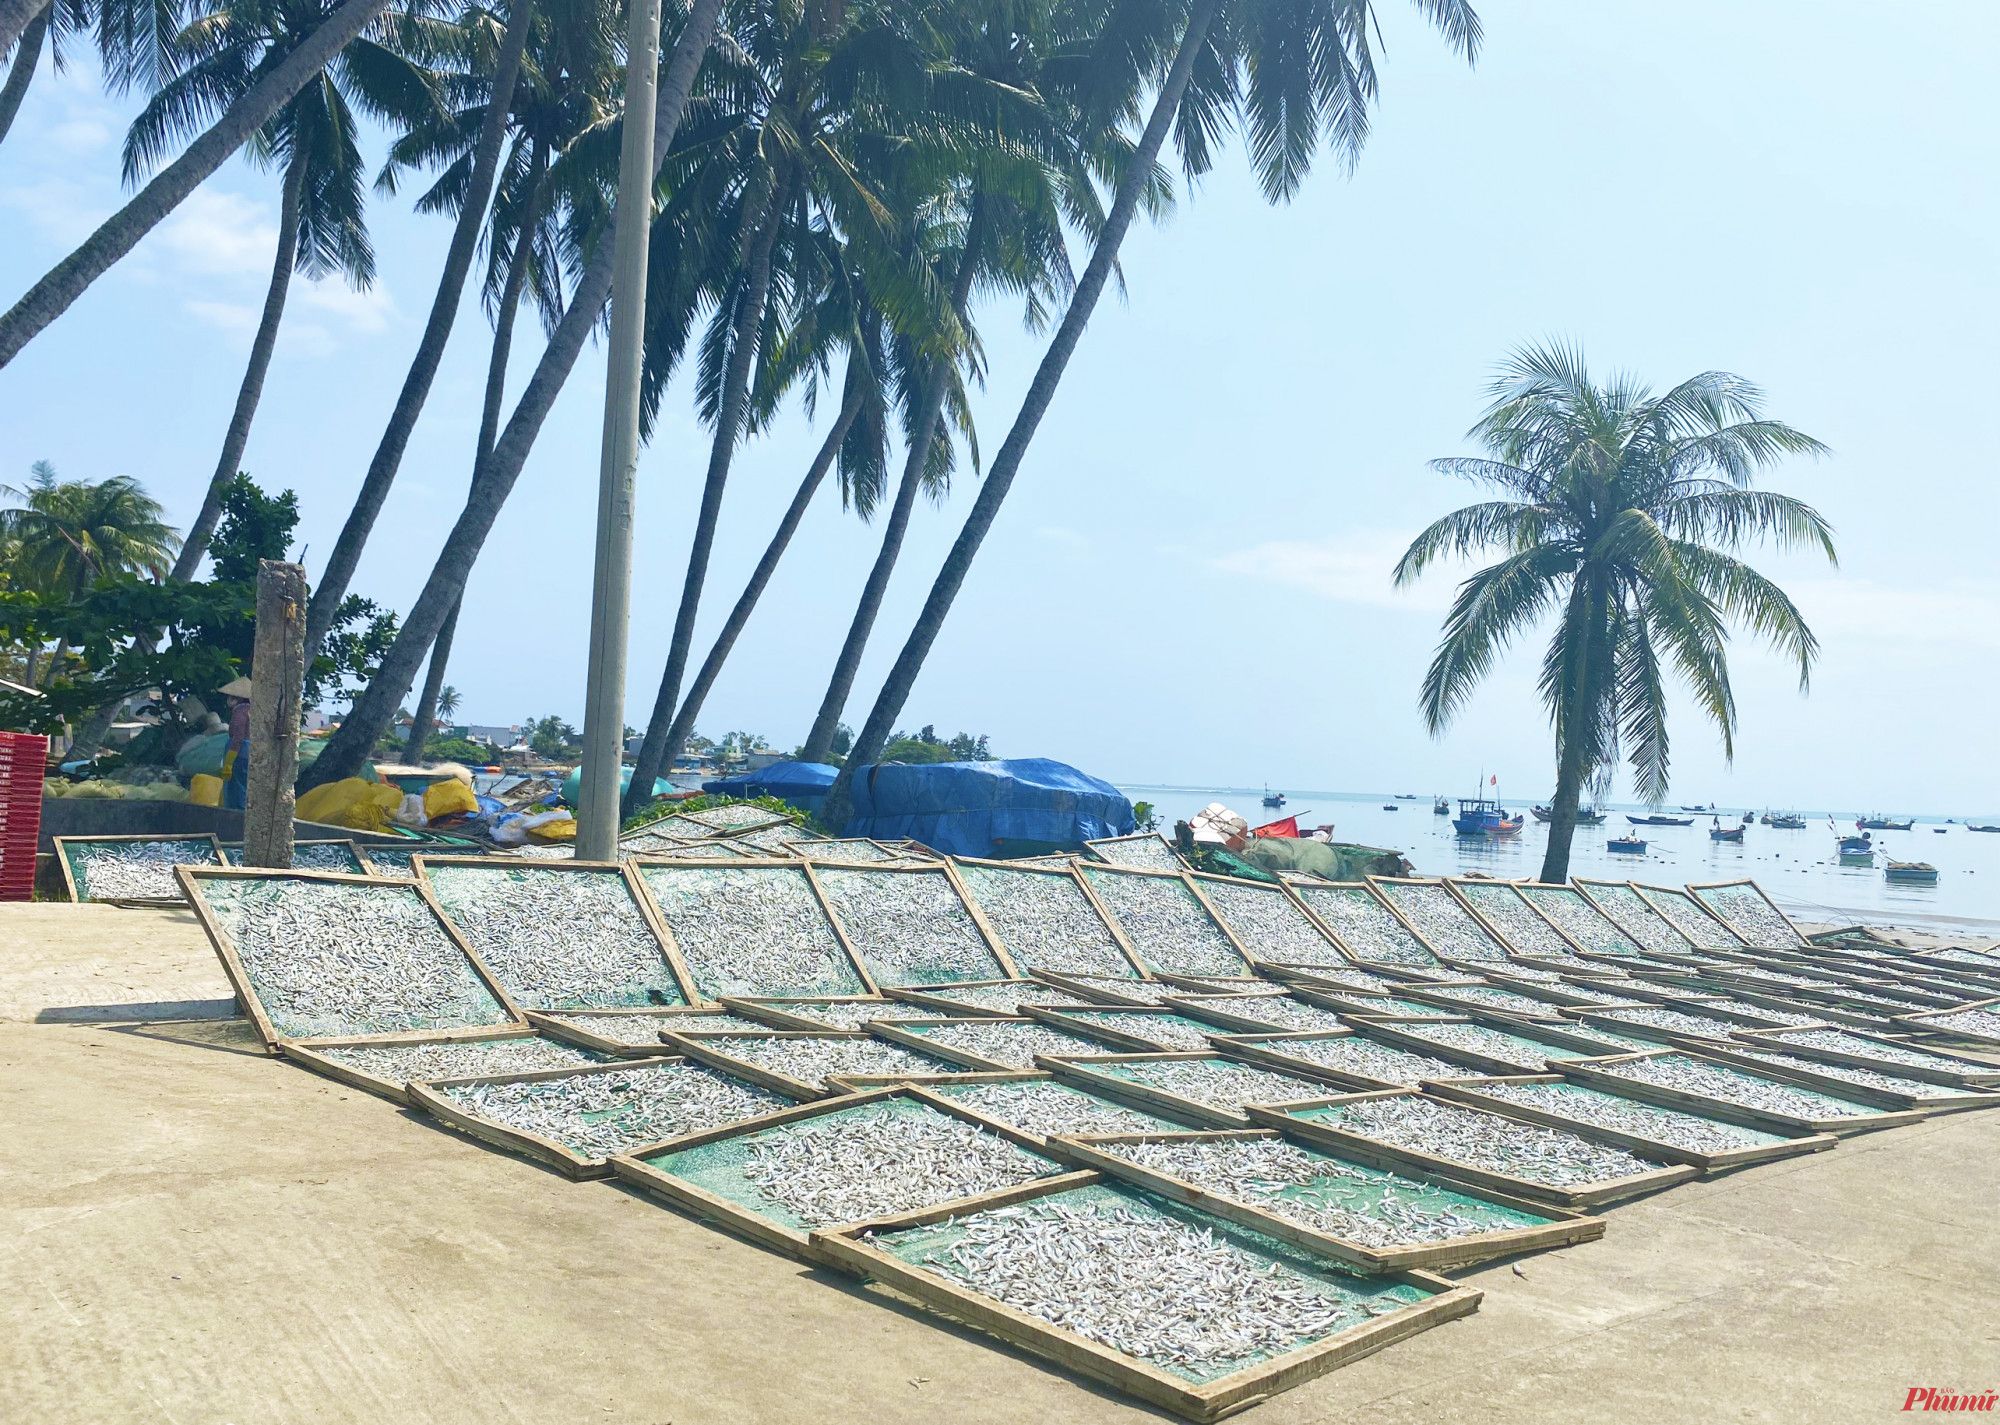 Ở thôn An Vĩnh có khoảng 15 lò hấp cá cơm, mỗi ngày hấp được hàng chục tấn cá